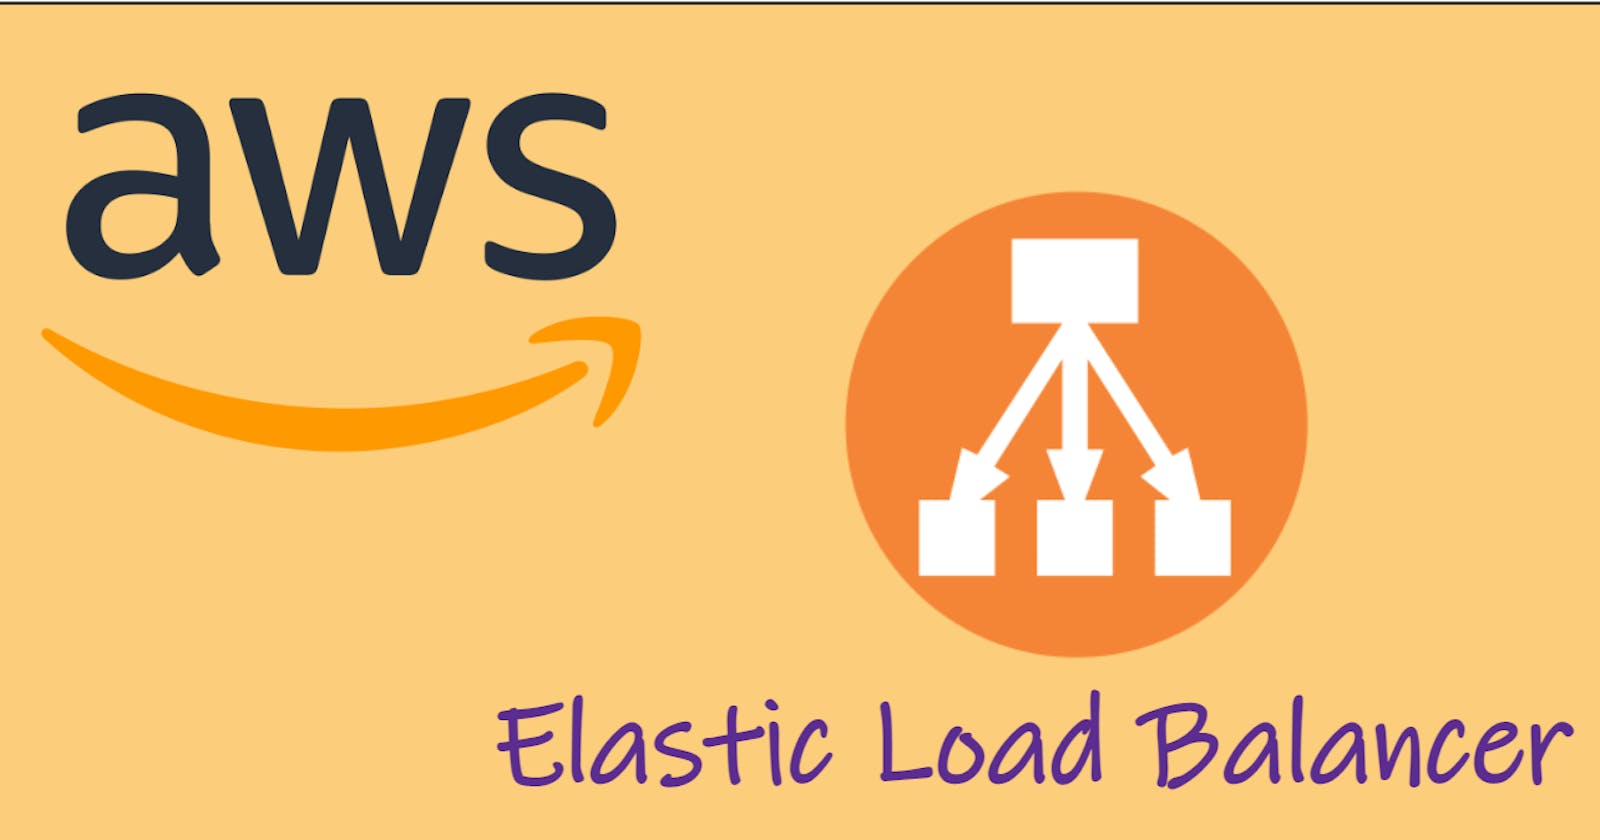 Elastic Load Balancer (ELB)